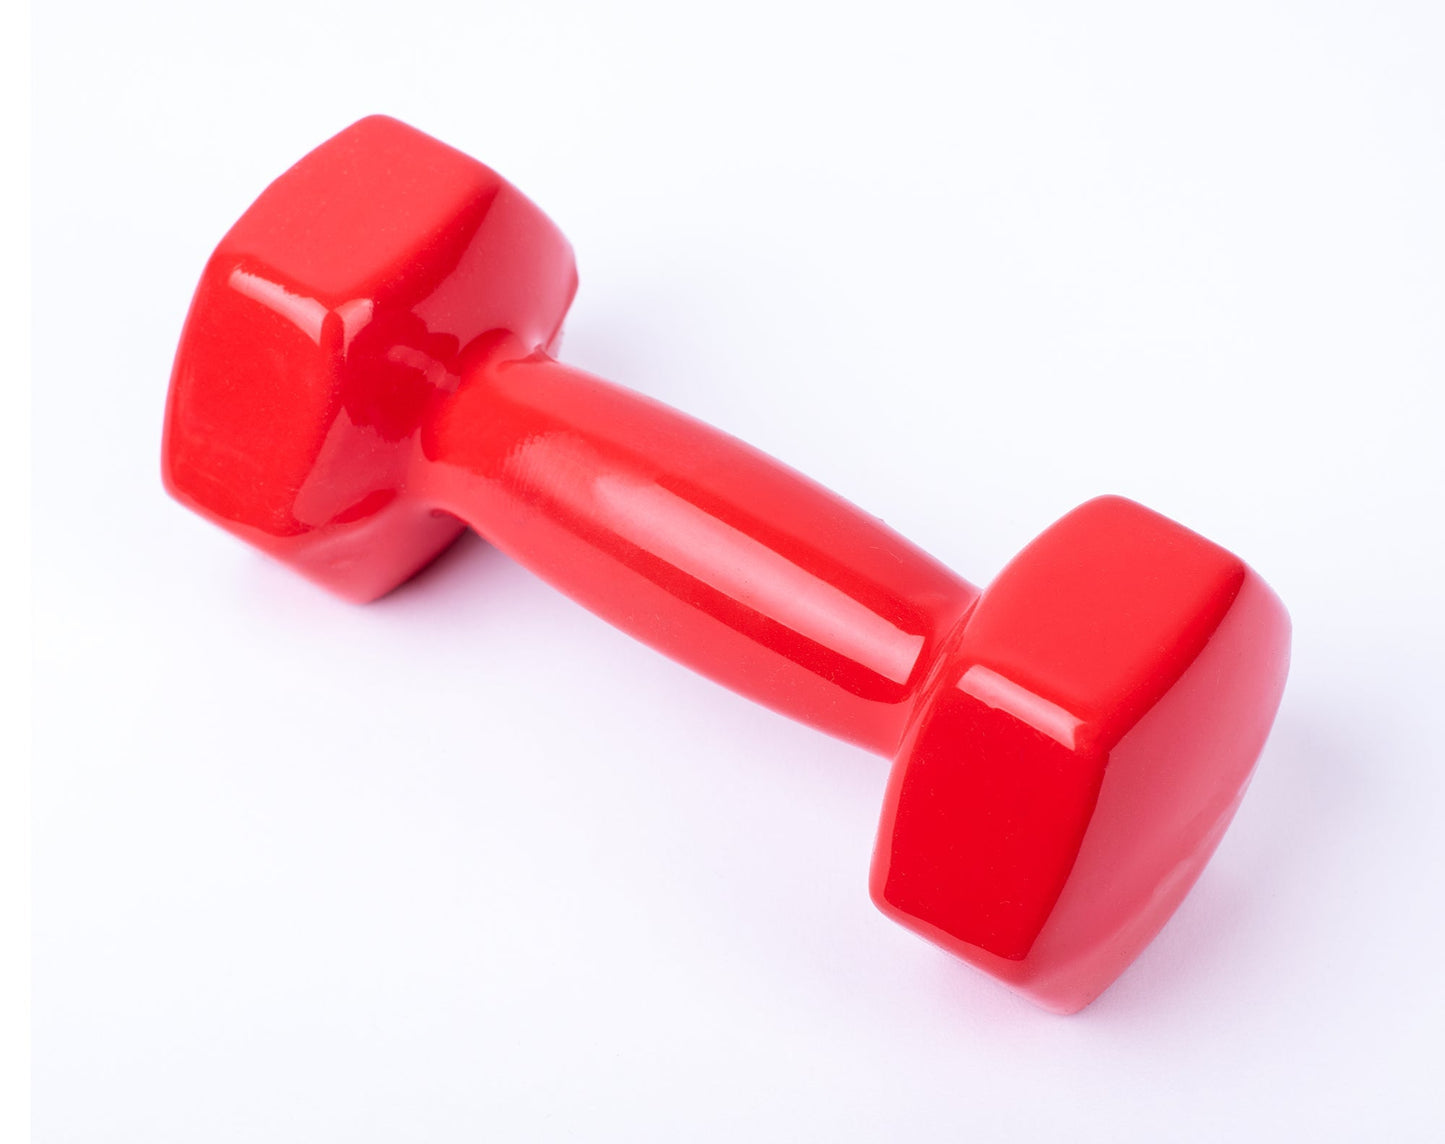 دامبل حديد للتمارين الرياضية بطبقة من الفينيل - لون احمر - قطعة واحدة - وزن 3 كيلو - Kanteen - كانتين